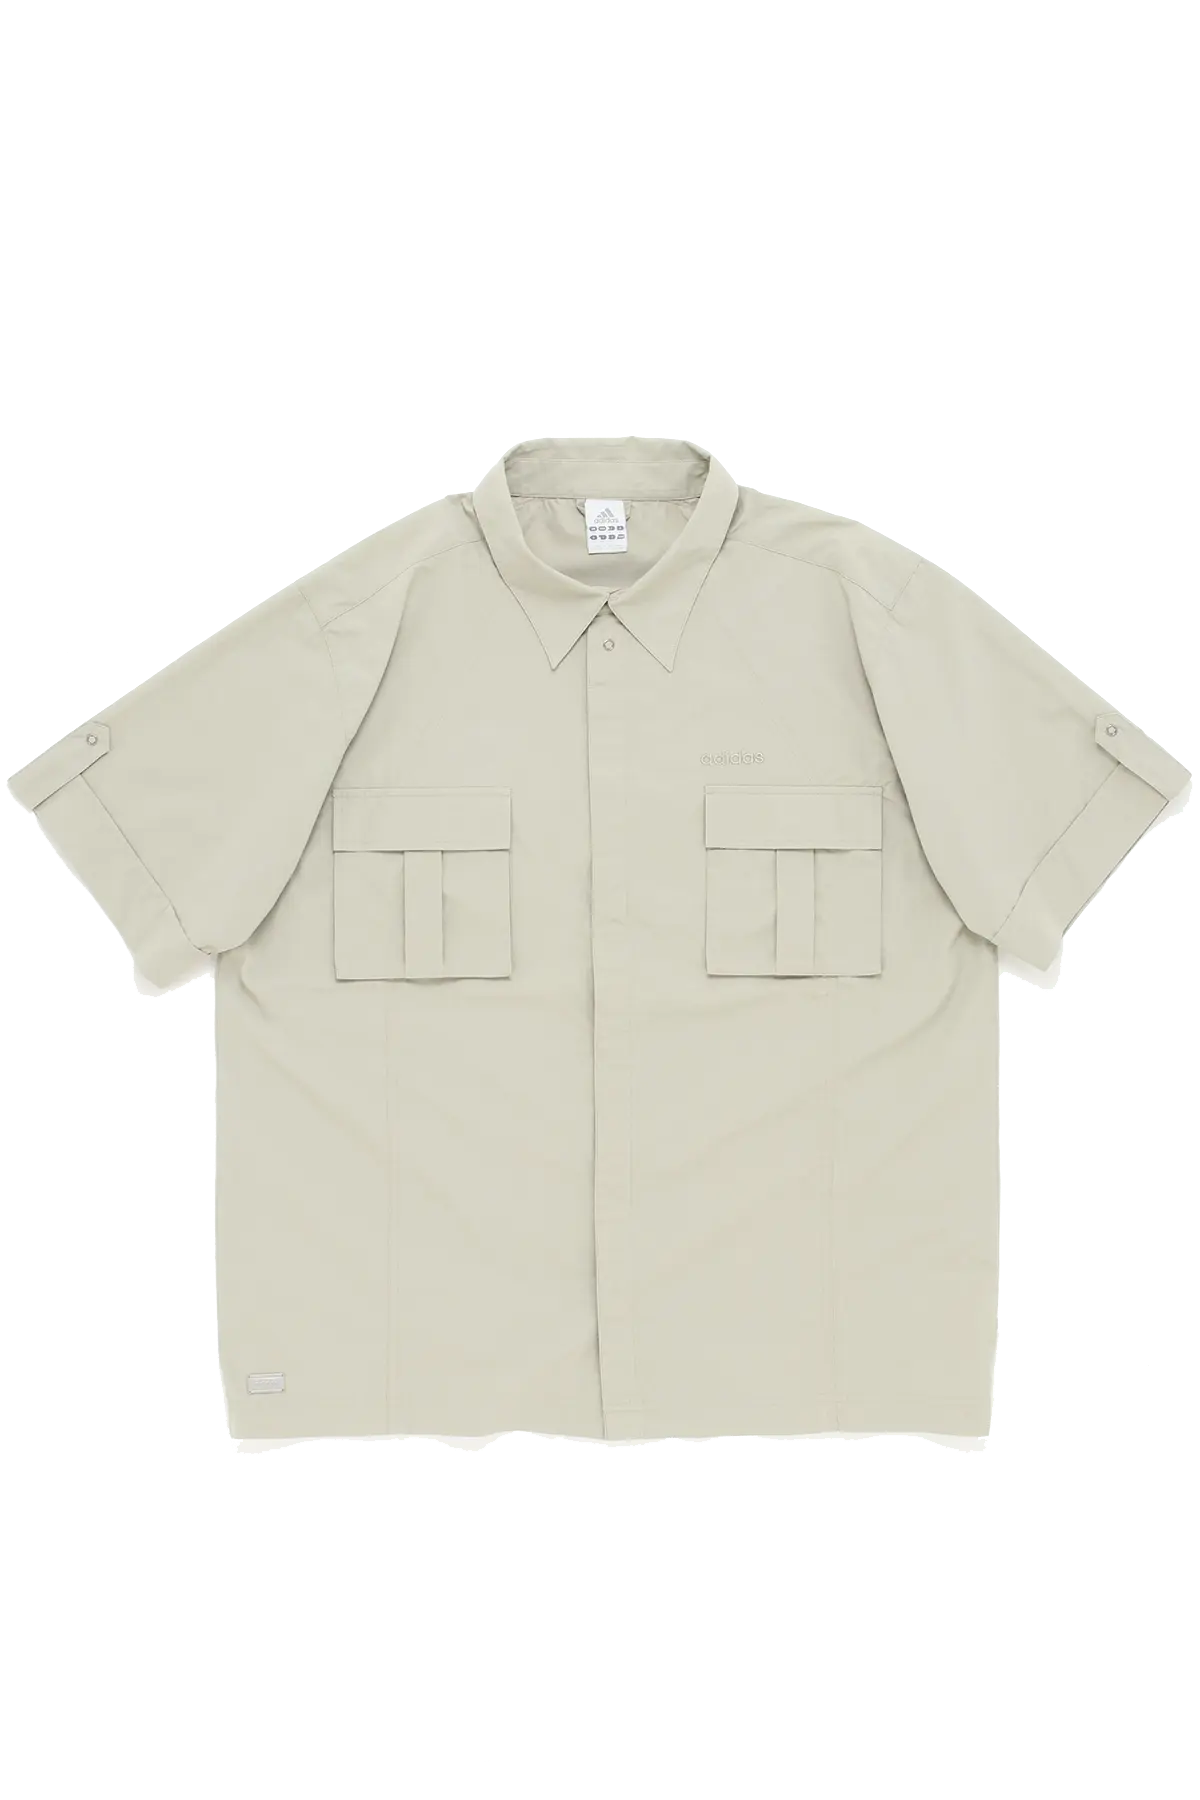 Adidas Safari Shirt